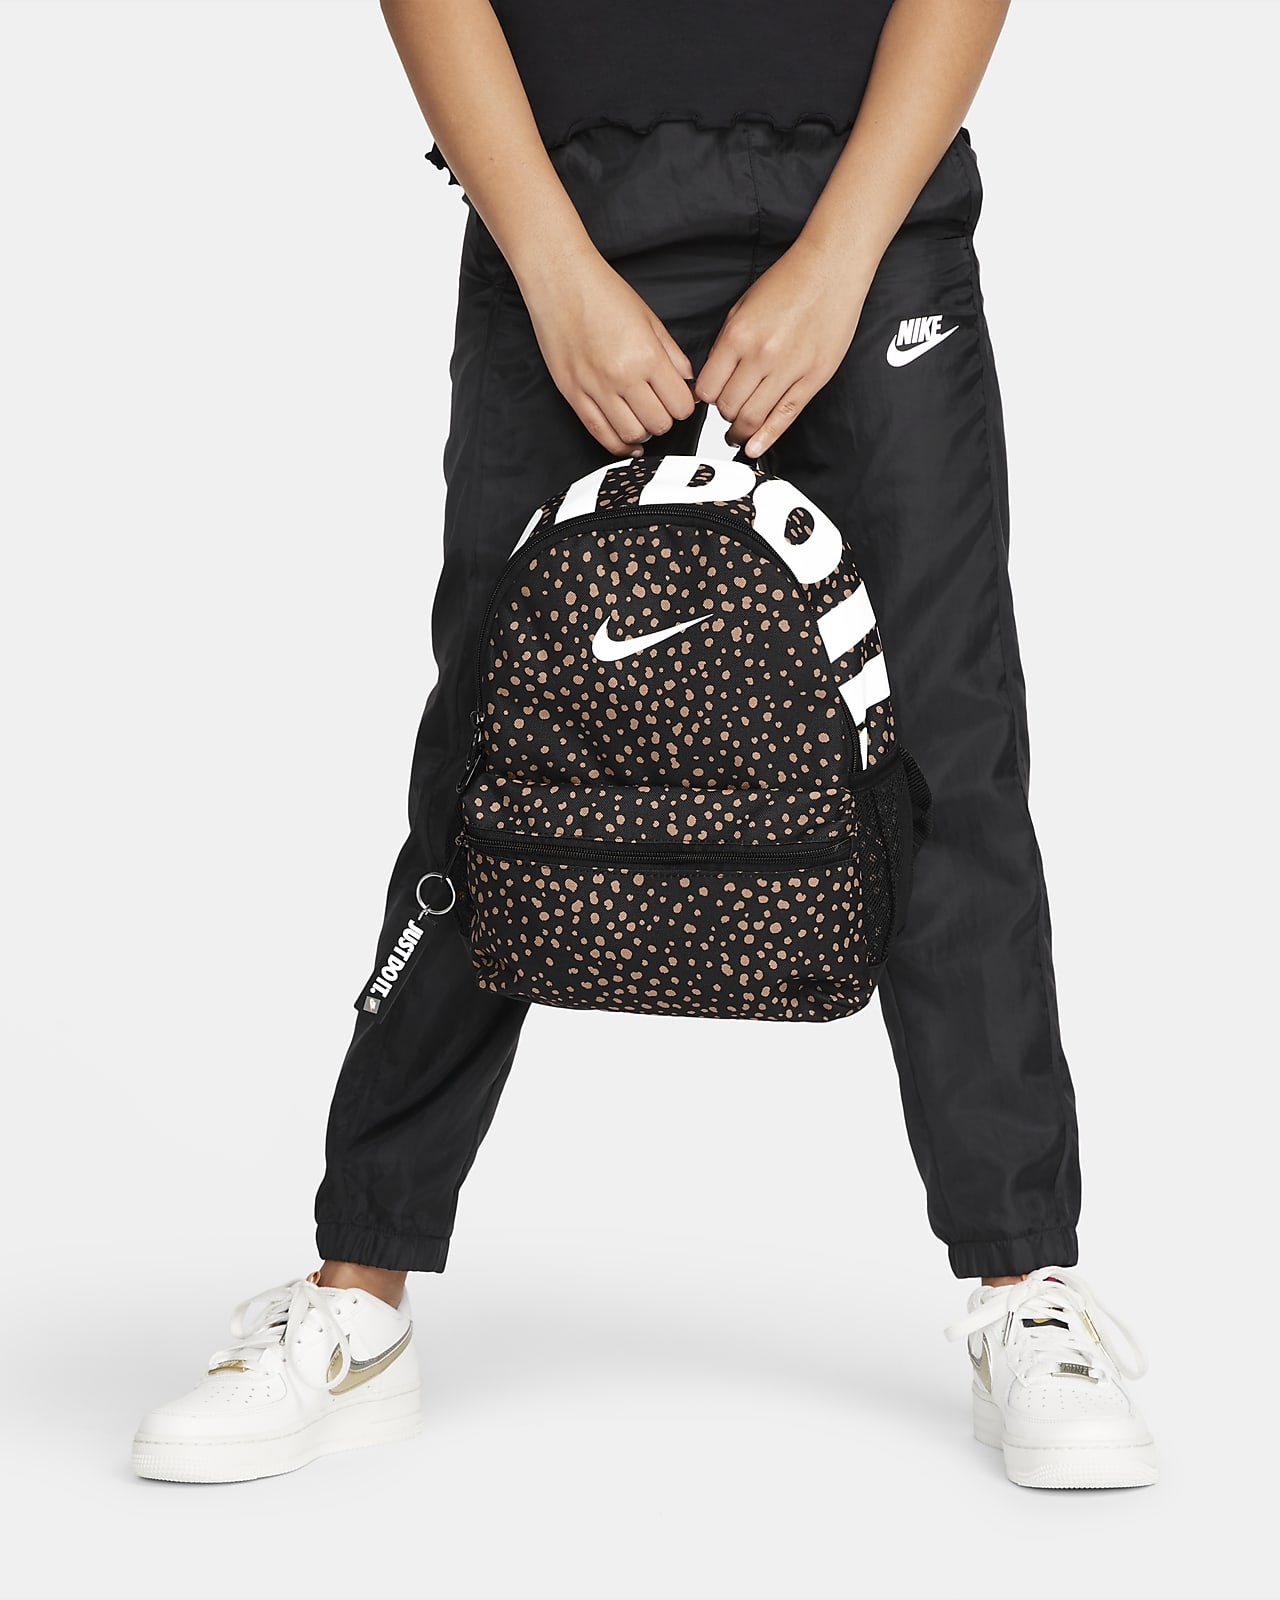 Nike Kids' Backpack (11L). Nike.com